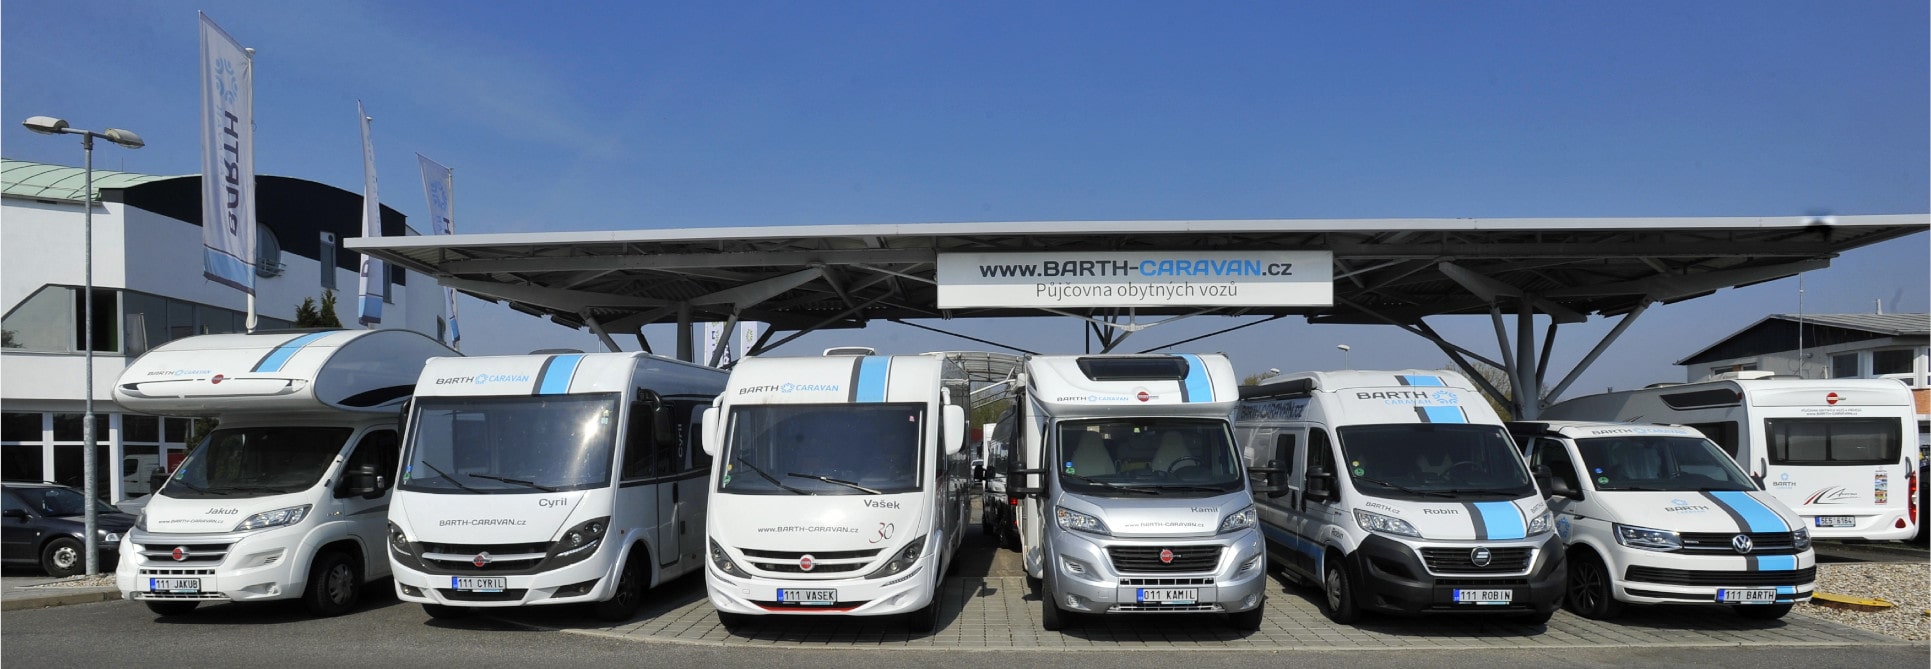 Půjčovna obytných vozů BARTH Caravan